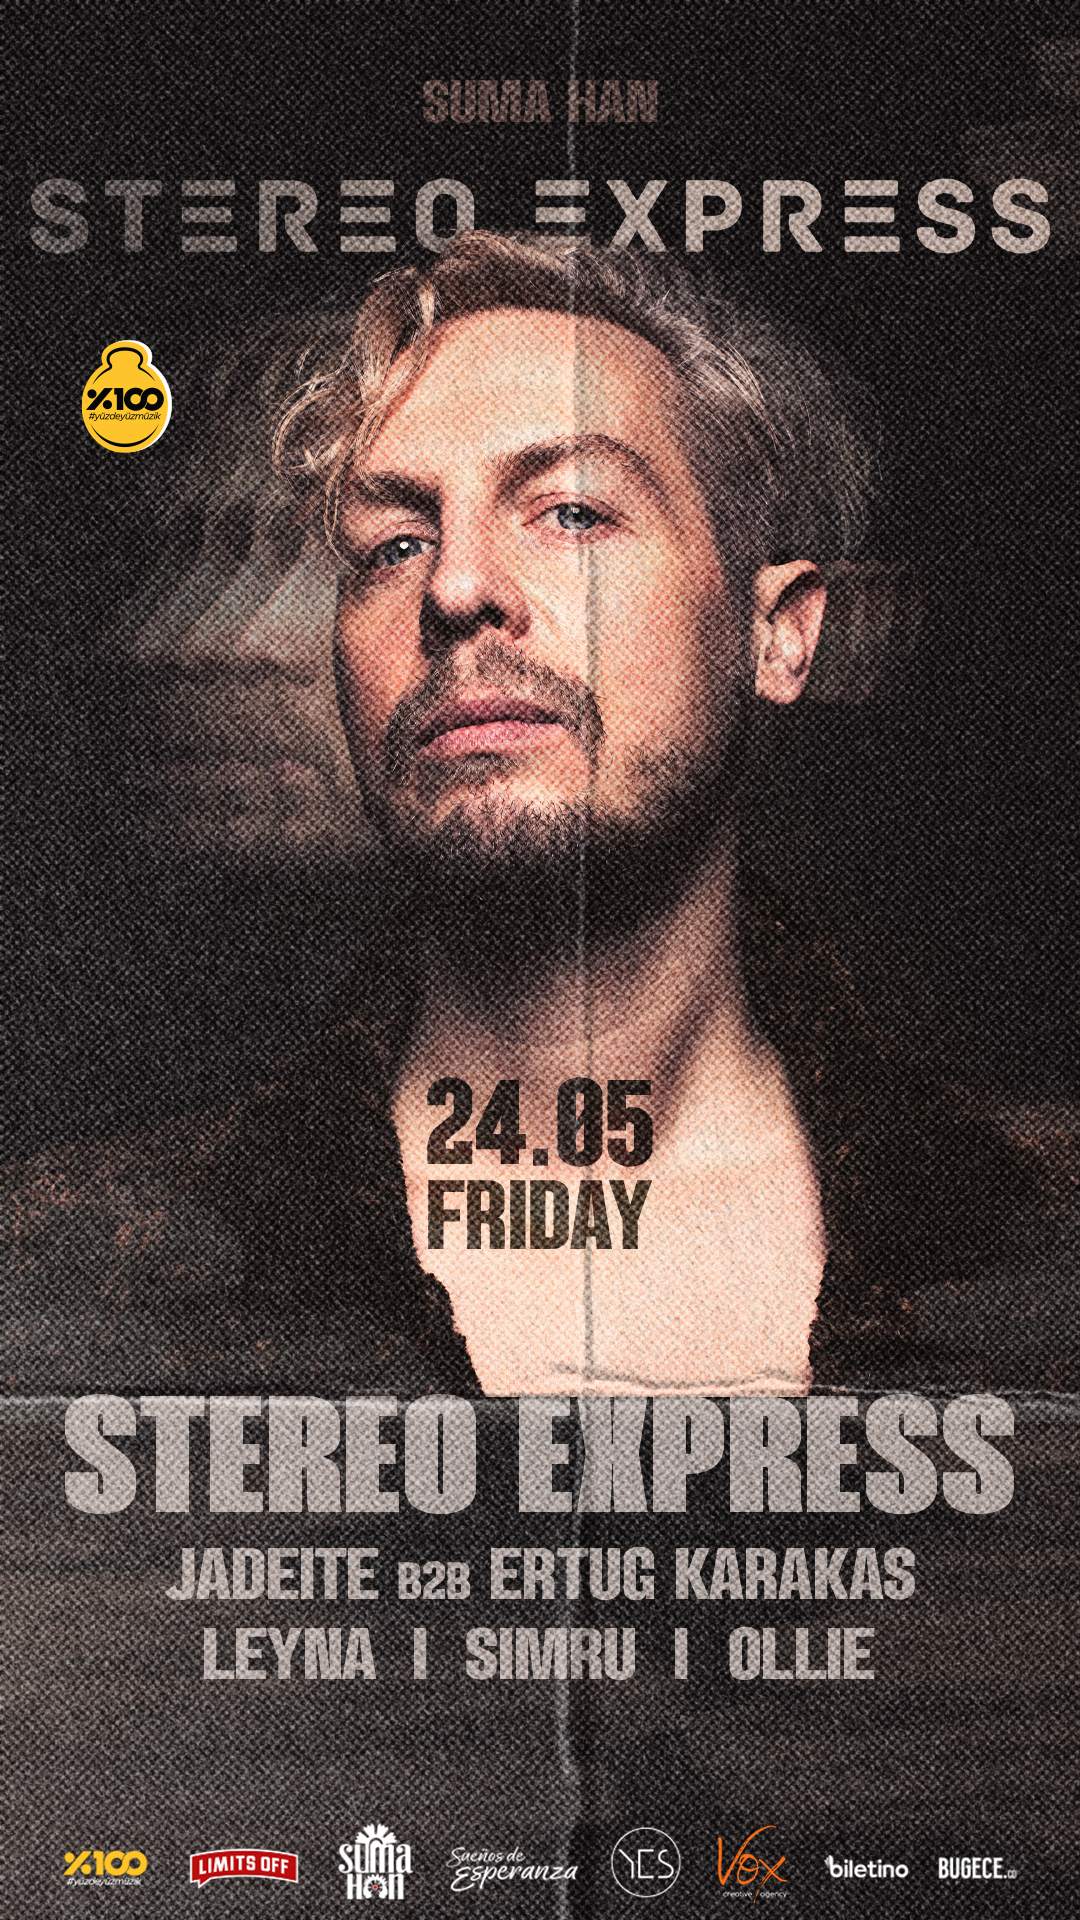 Stereo Express presented by %100 Müzik & Vox Creative Agency & Suenos De Esperanza at suma han - Página frontal